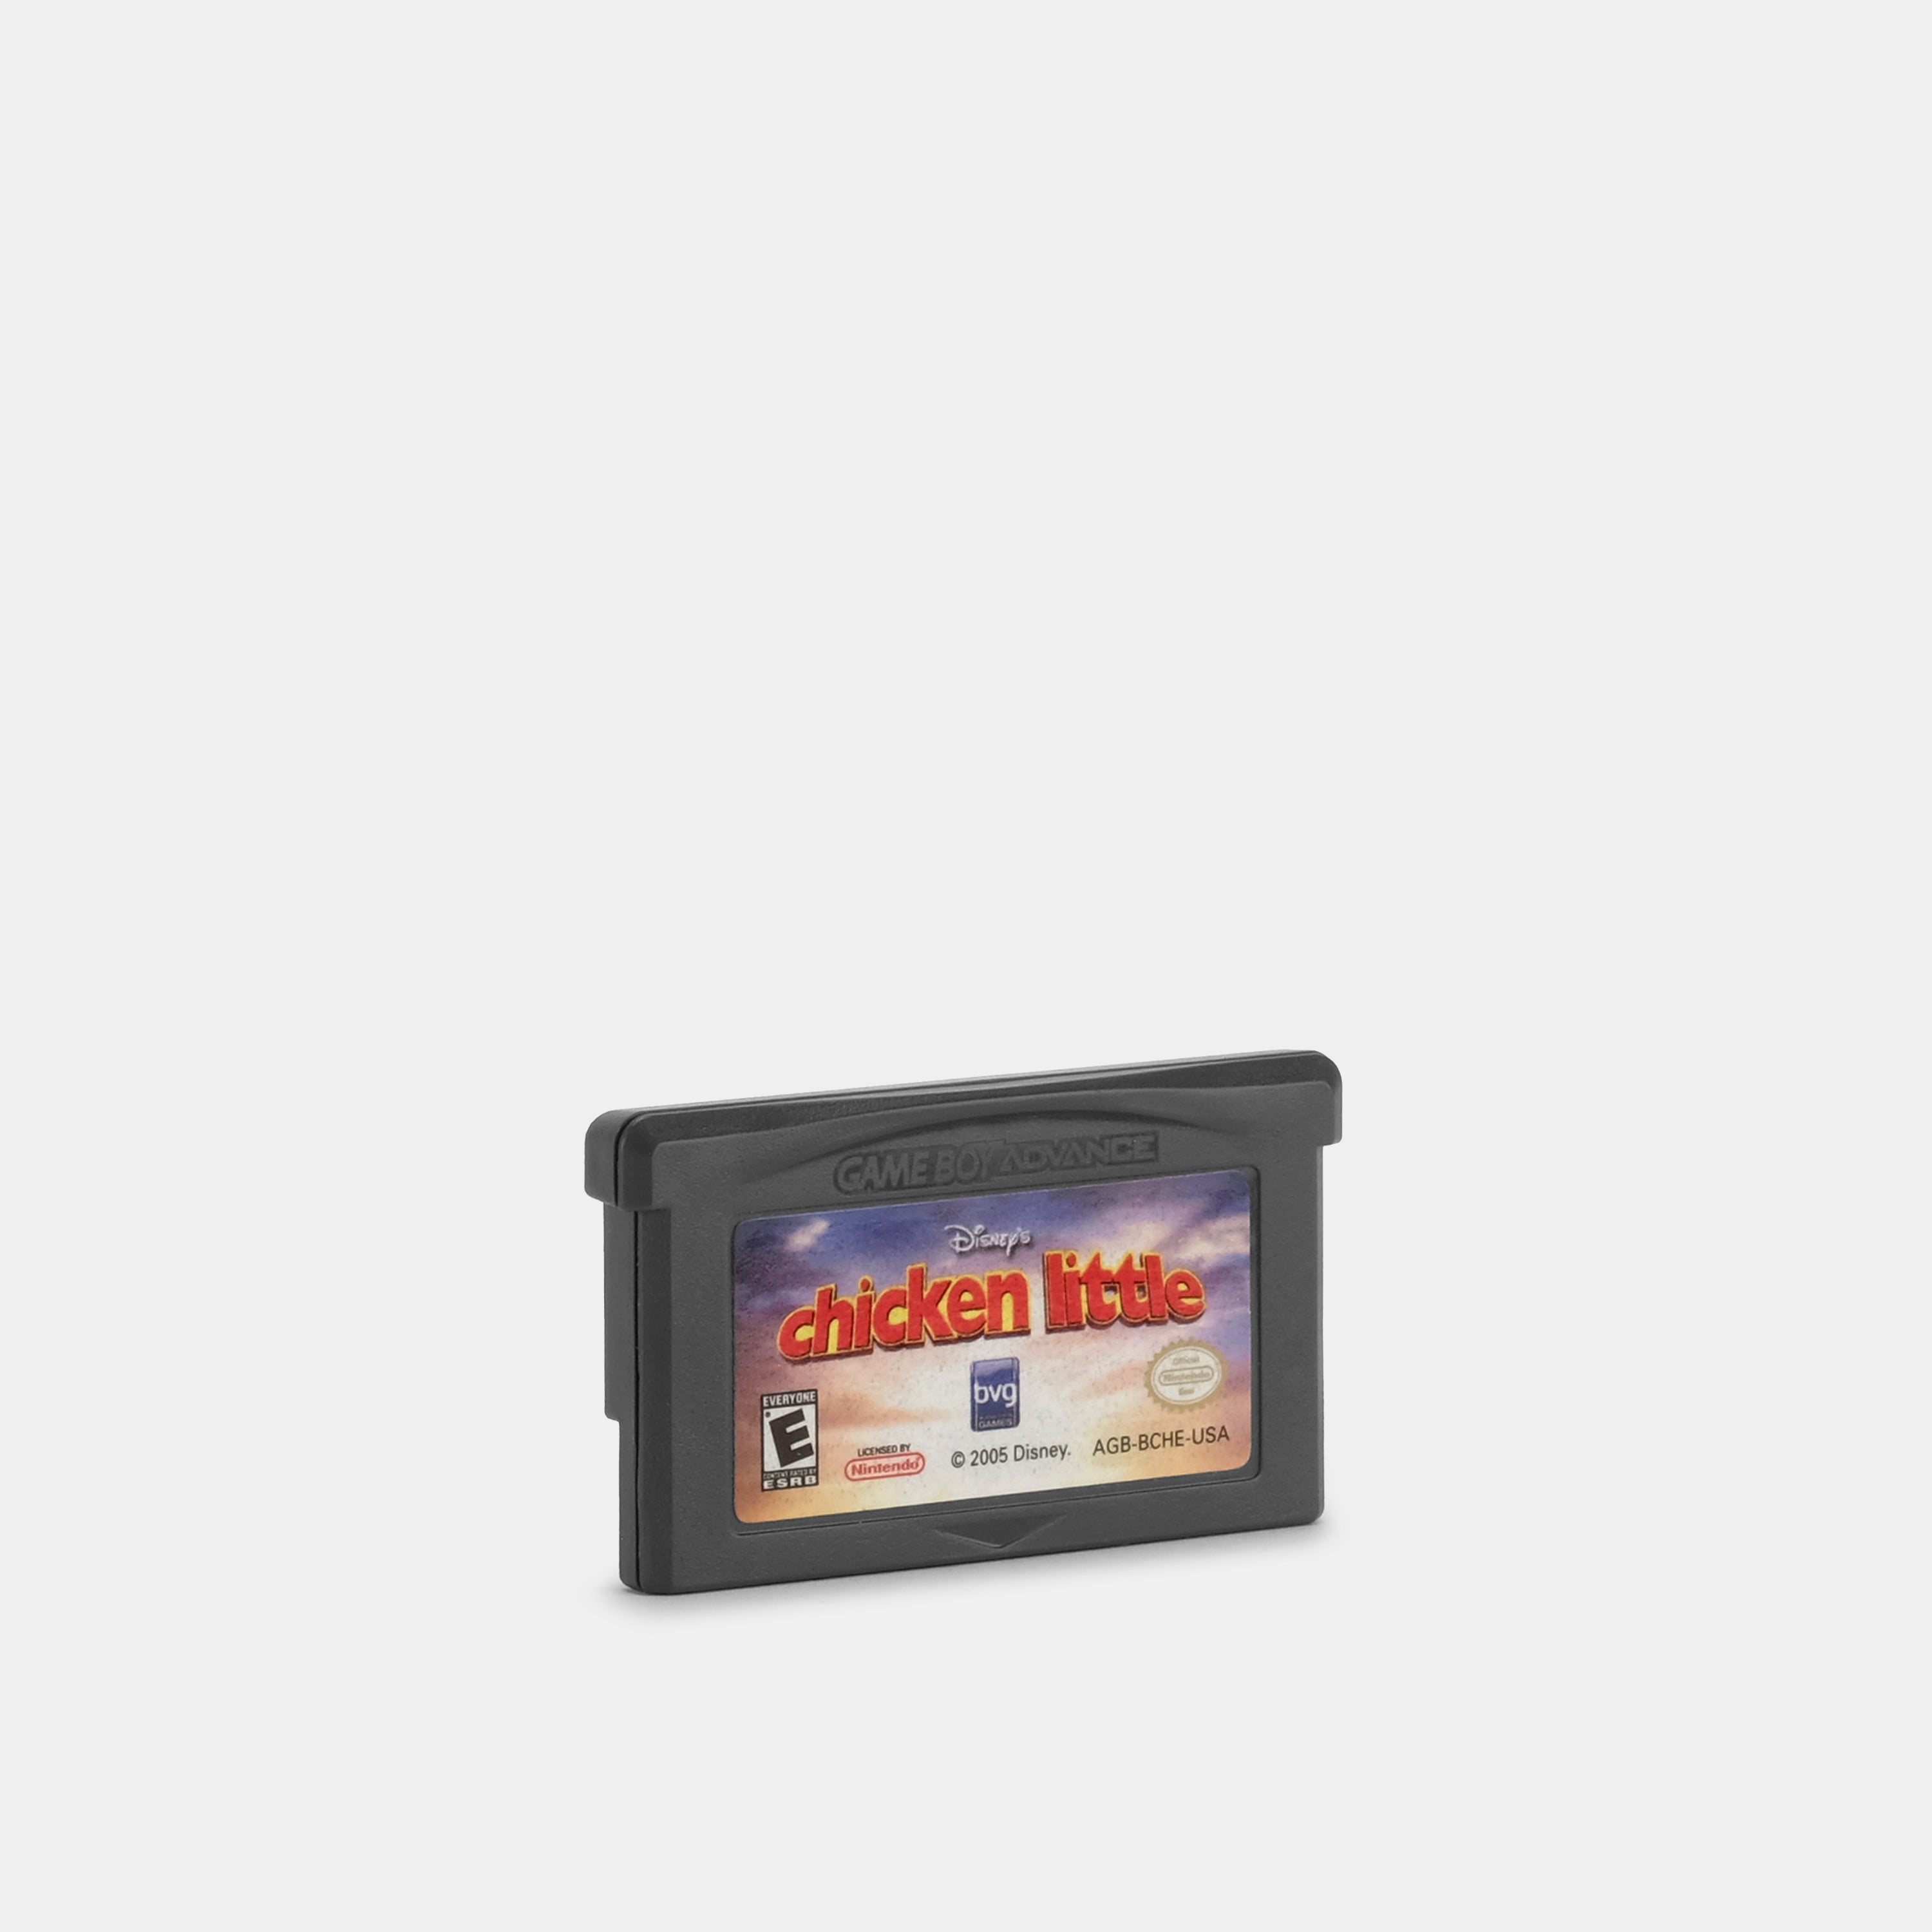 Disney's Chicken Little Game Boy Advance Game